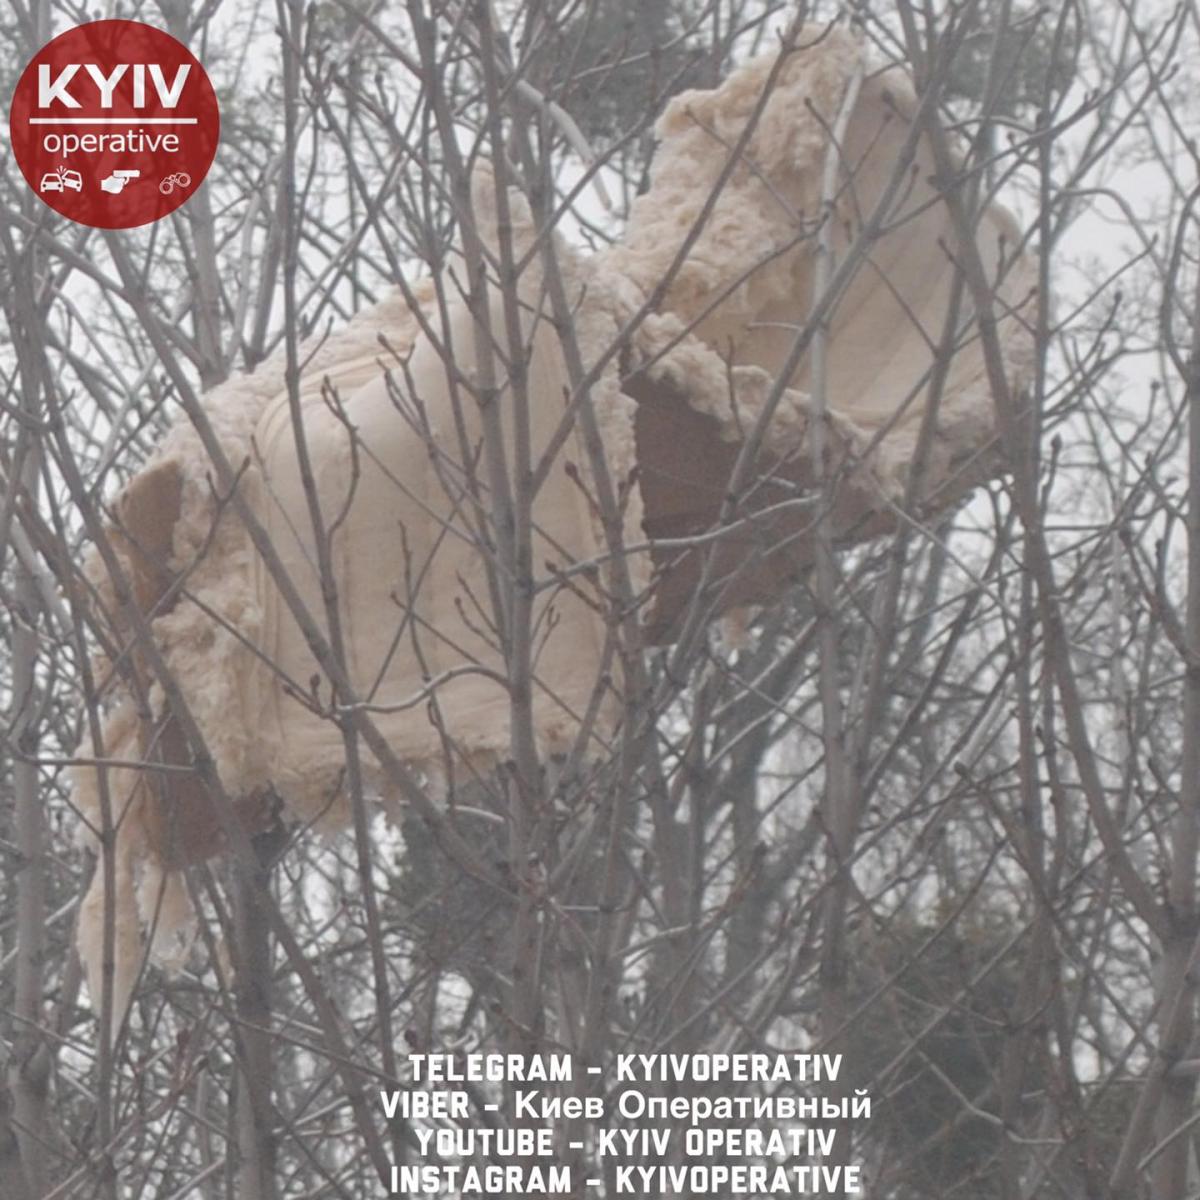 Диван застрял на дереве / Киев Оперативный Facebook